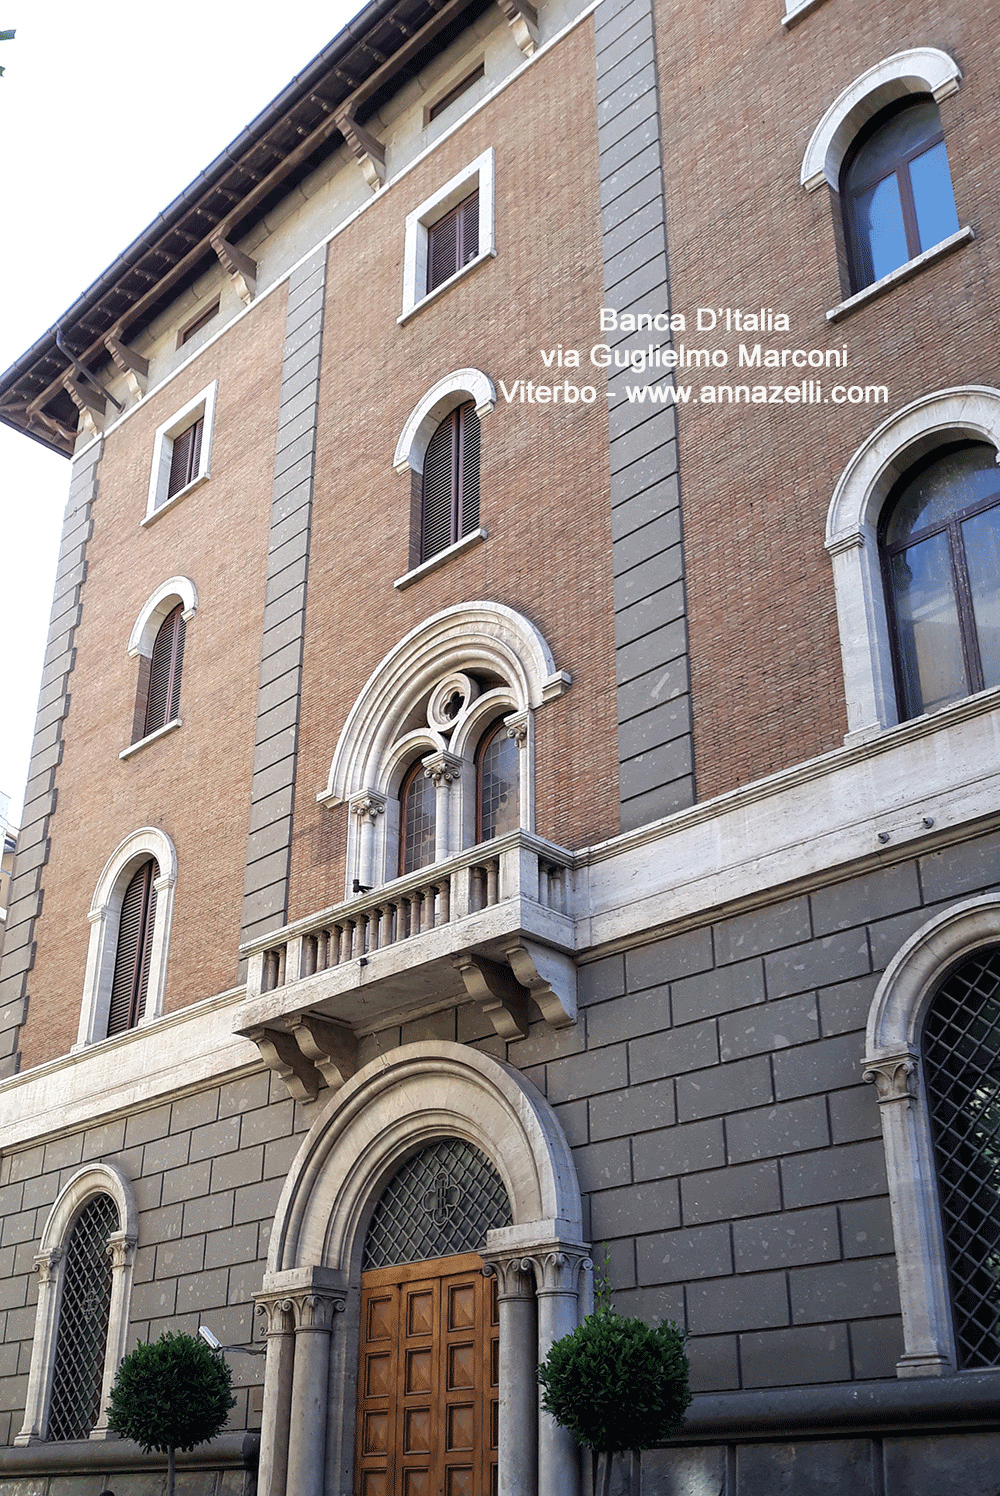 palazzo banca d'italia viterbo via guglielmo marconi info foto anna zelli